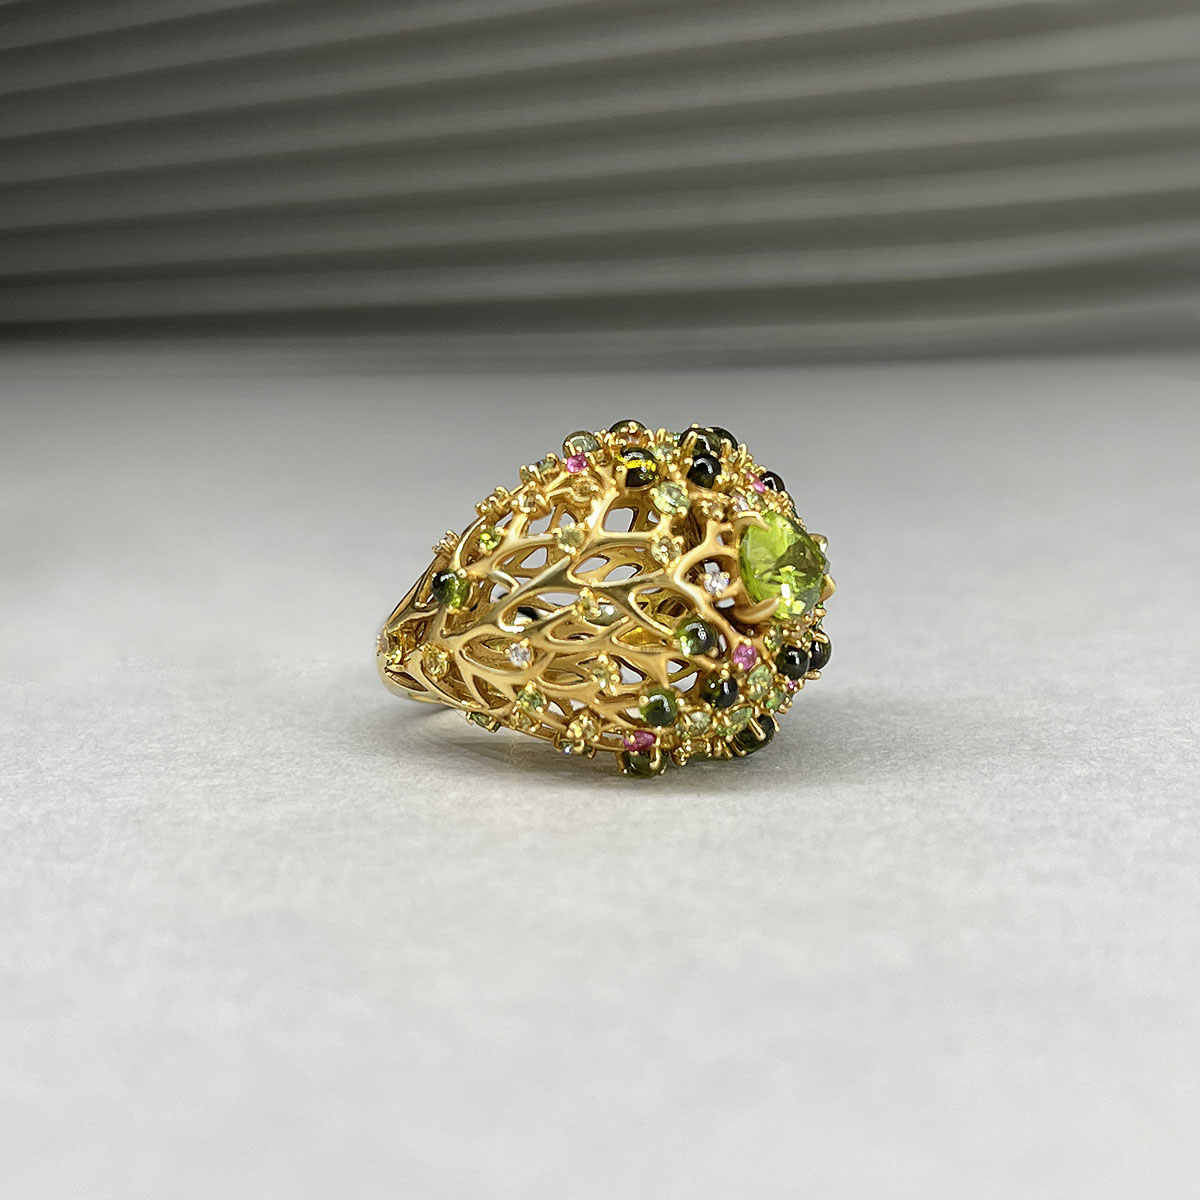 Кольцо с бриллиантами, хризолитом, турмалином, демантоидом, тсаворитом, сапфиром фантазийным из желтого золота 750 пробы, фото № 3